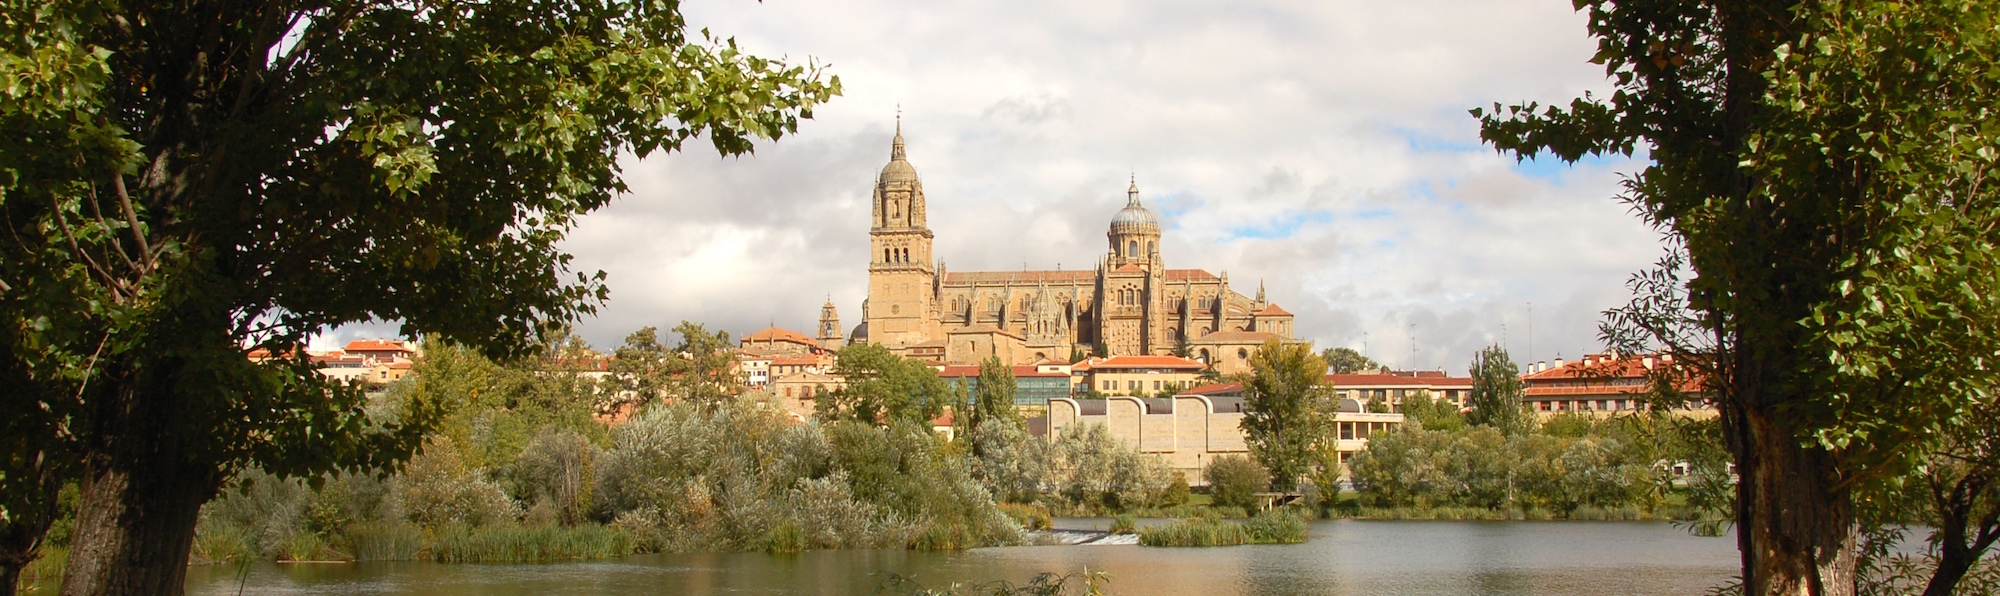 Puente romano, Salamanca